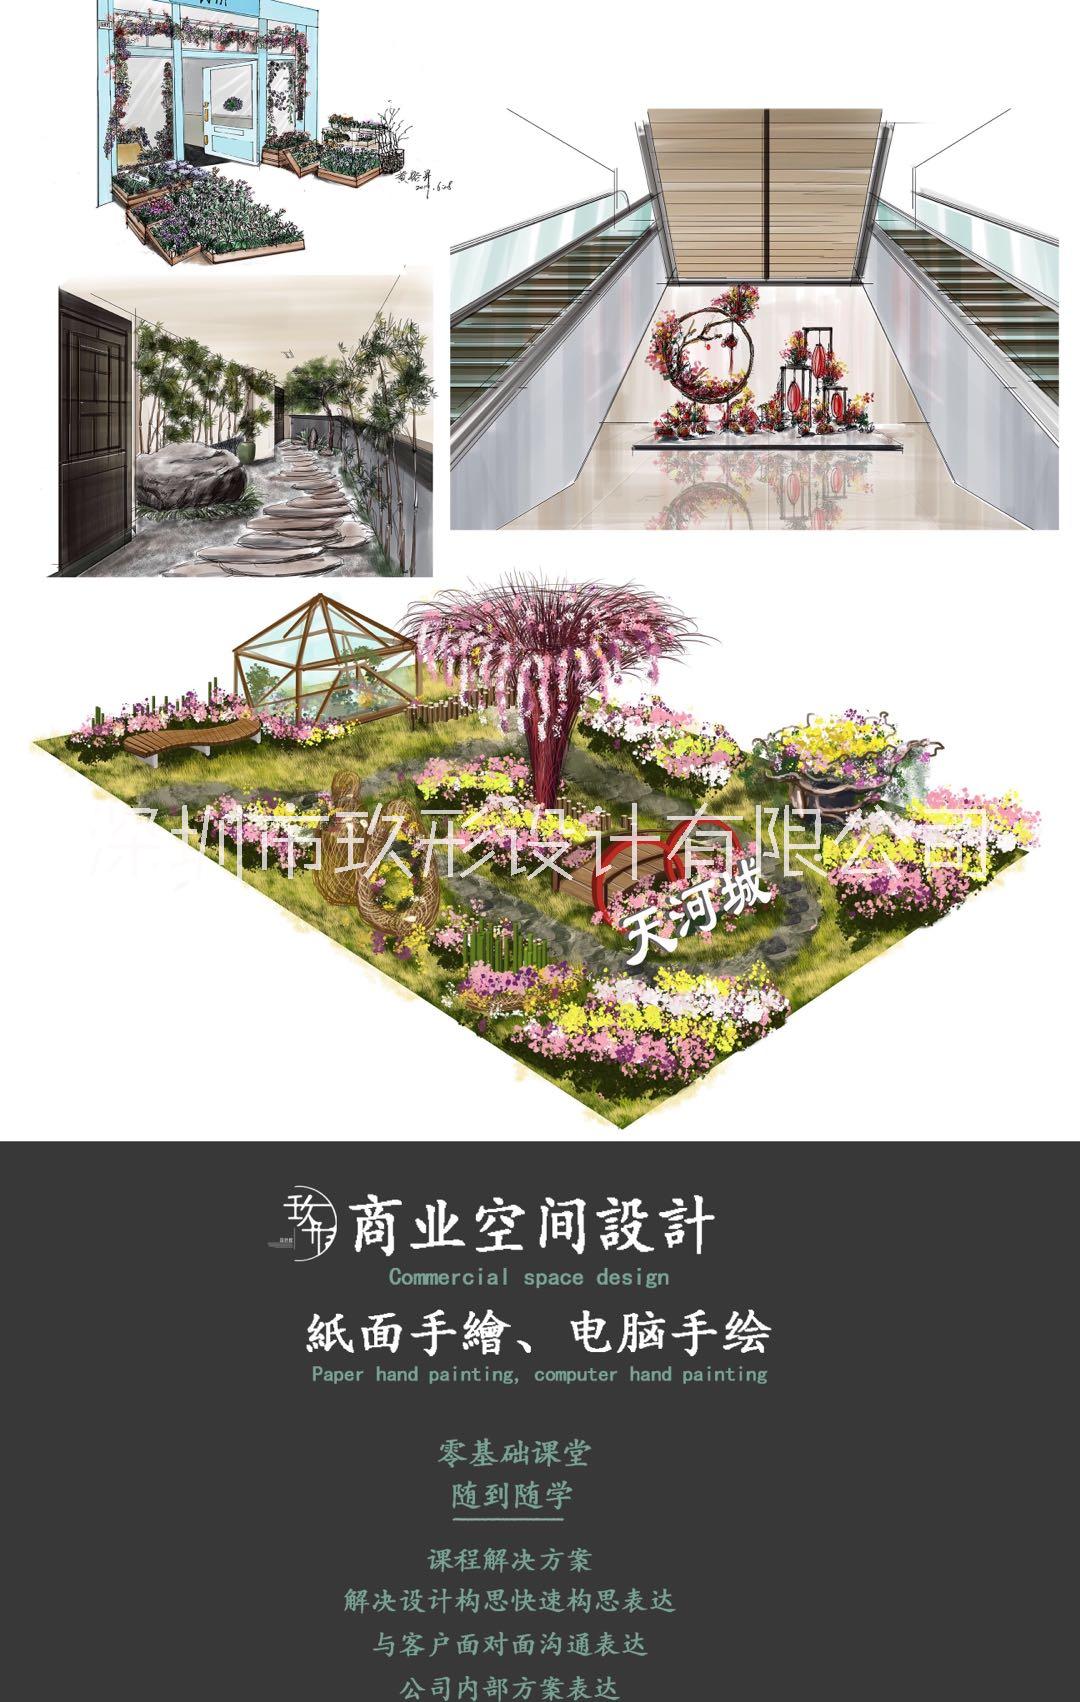 广州市玖形手绘设计教育 零基础包学会厂家